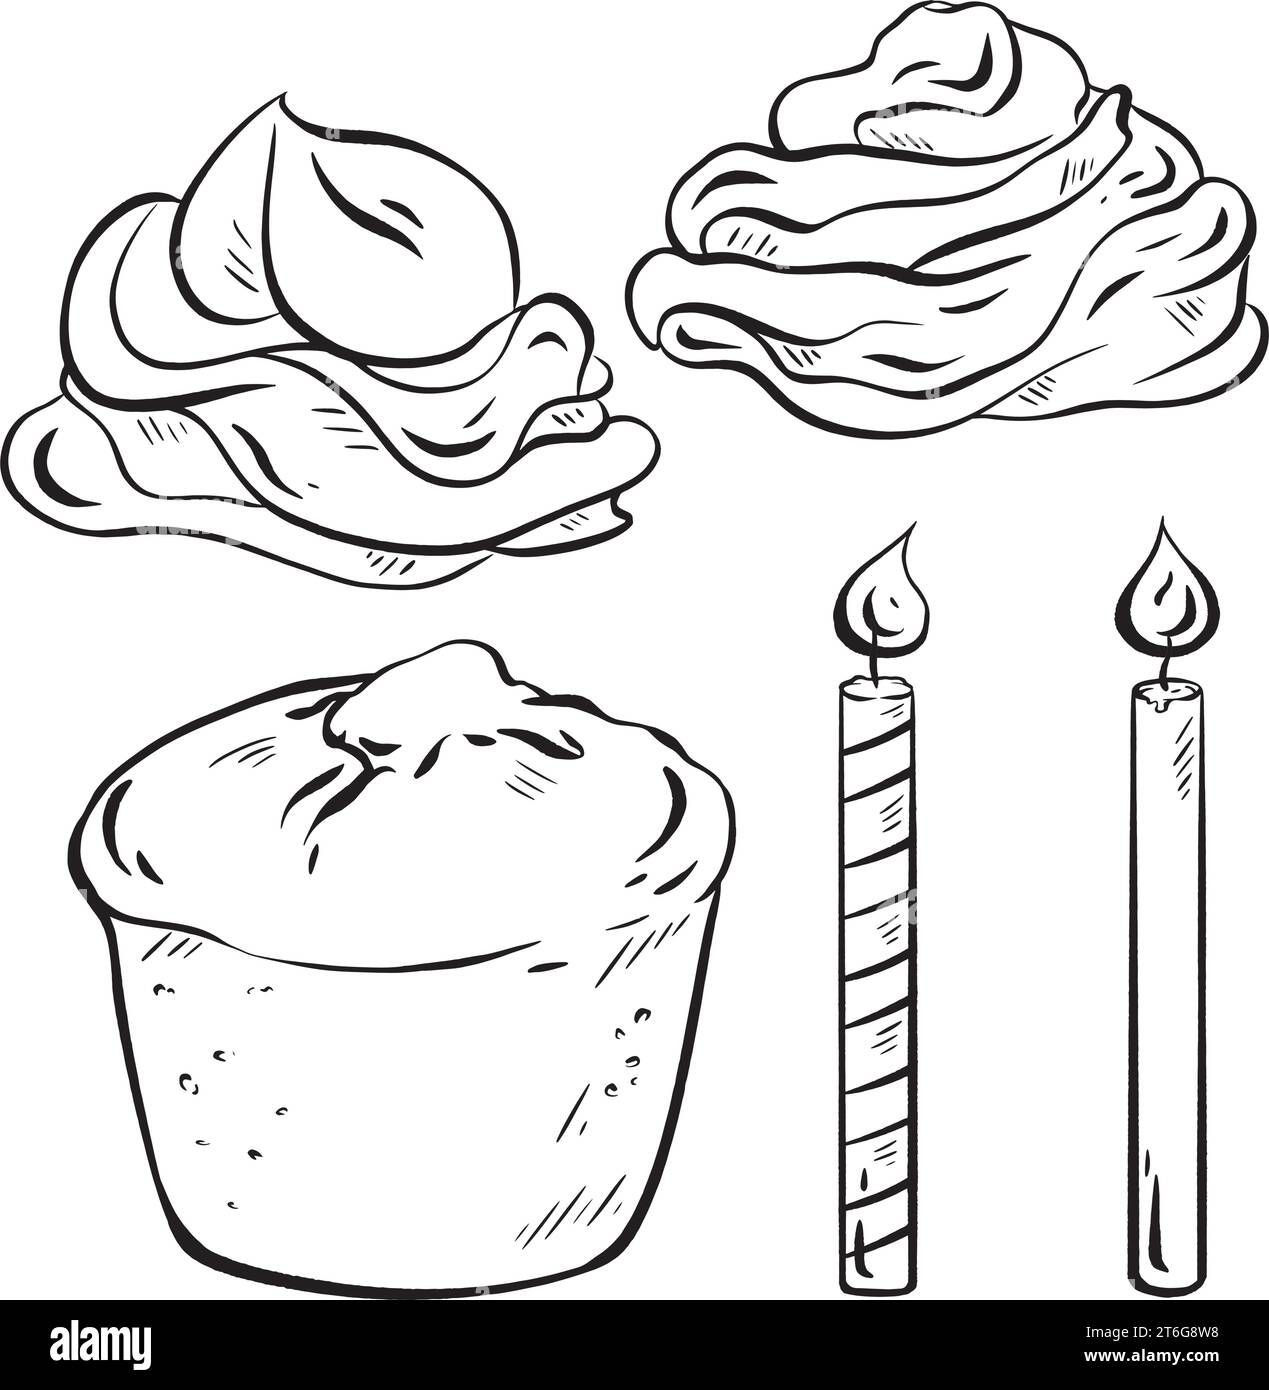 Handgezeichnete Vektorskizze. Geburtstagsmuffinbauer. Schwammbasis, Creme-Wirbel oben. Feiern Sie mit Kerzen. Wünschen Sie sich und blasen Sie die Kerze aus Stock Vektor